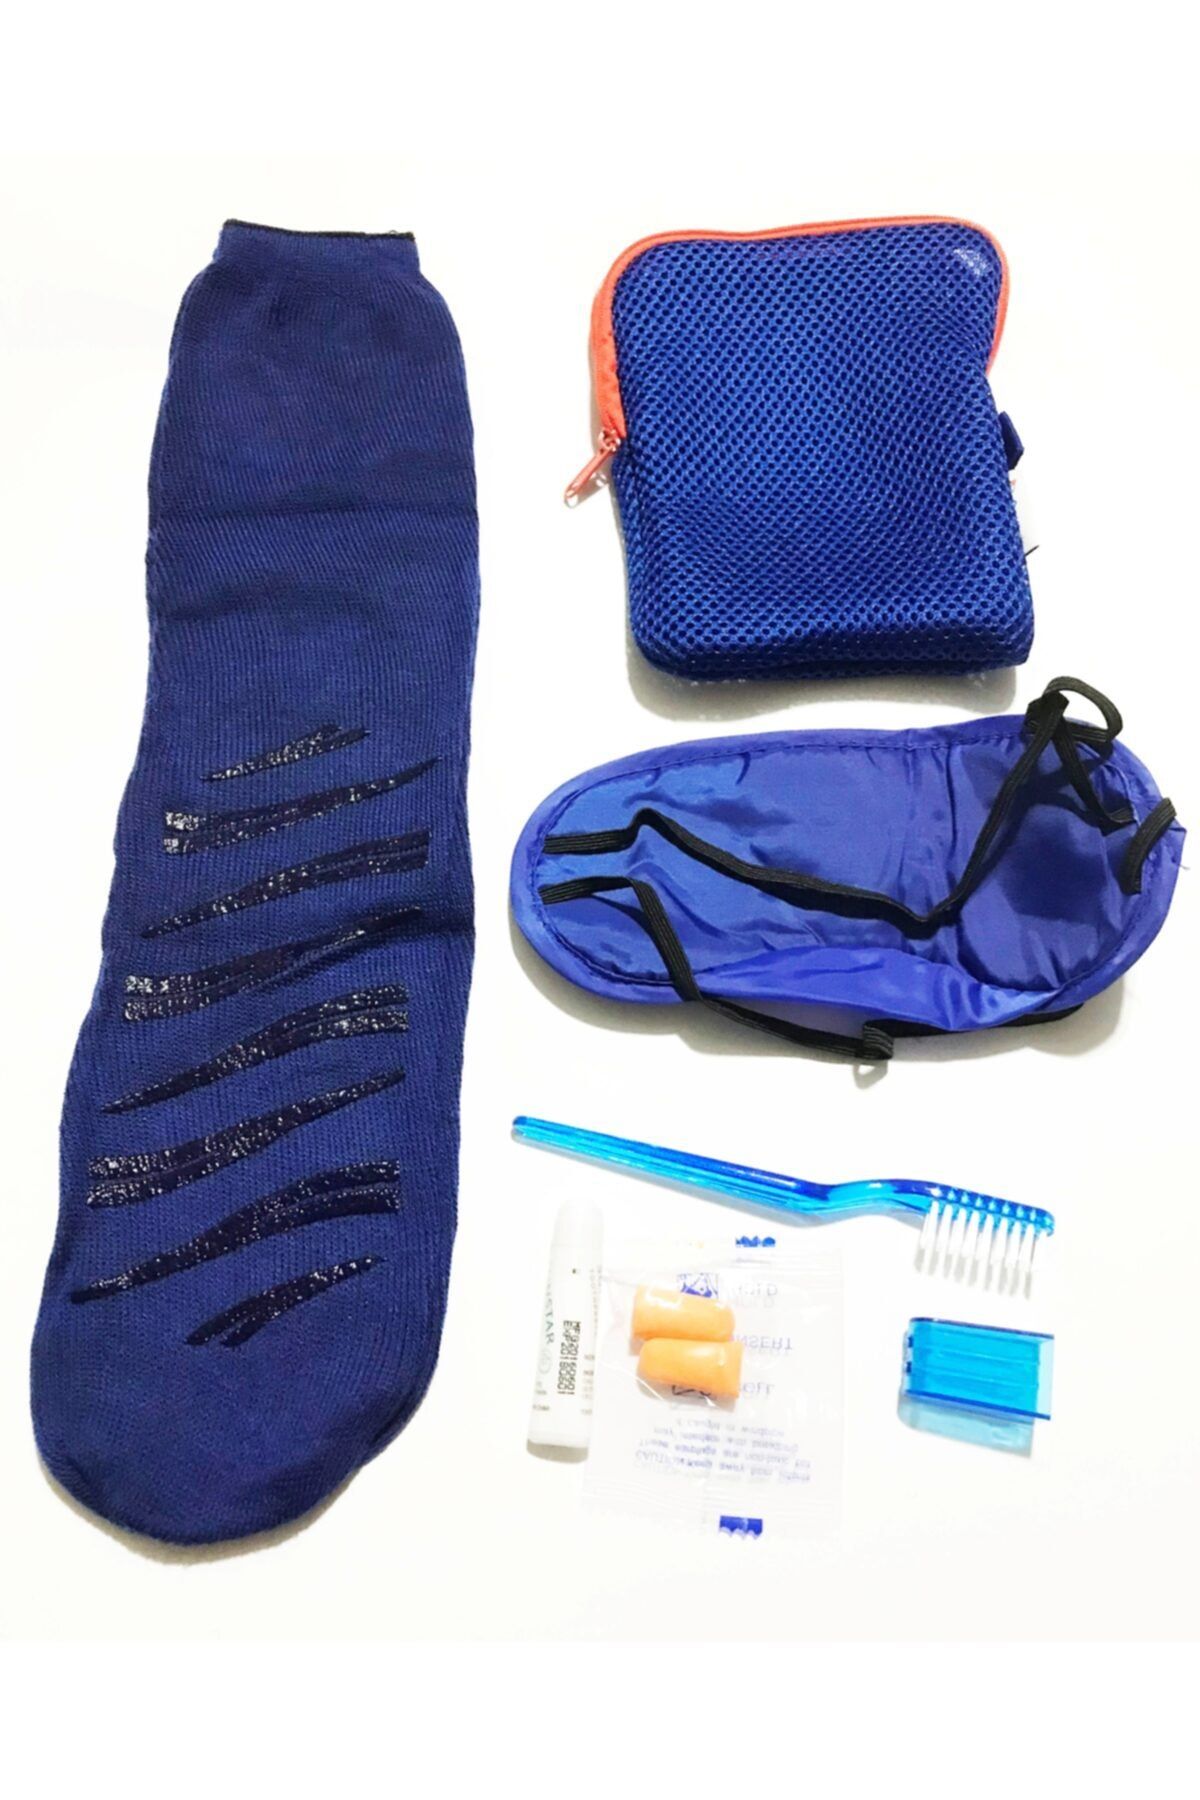 Mahi Max Çok Amaçlı Mavi Kalemlik Kutusu Çanta & Seyahat Seti - Uyku Çorabı Uyku Bandı Diş Fırçası Ve Macunu